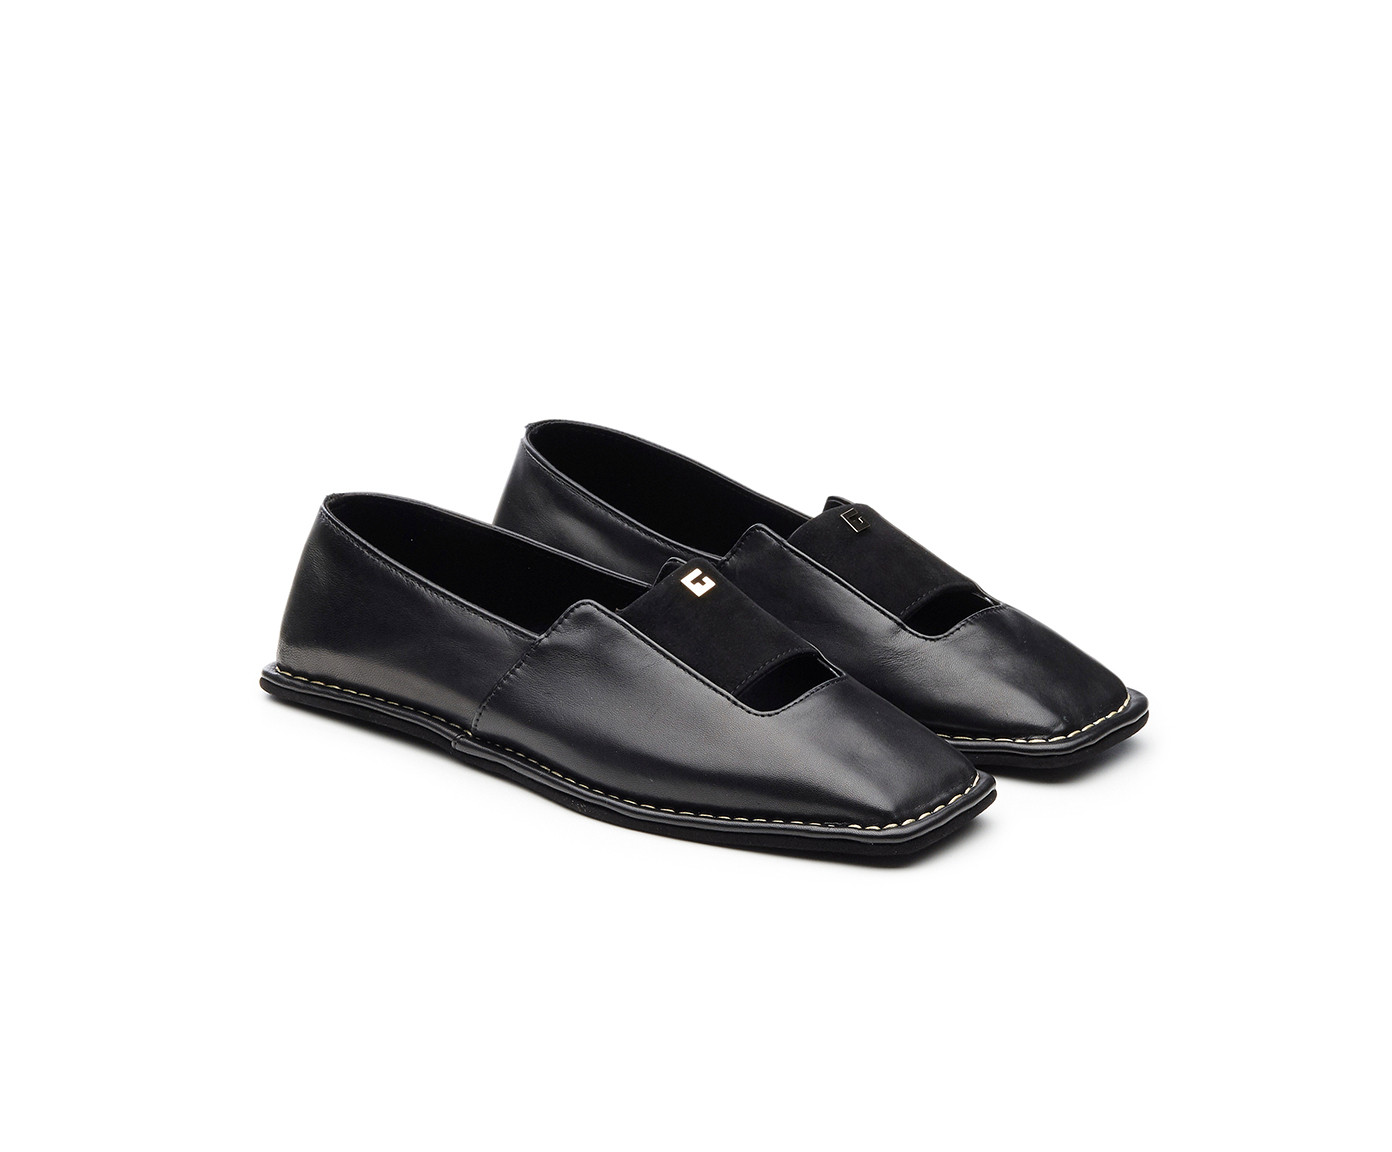 Giordano Torresi shoes | VESTA